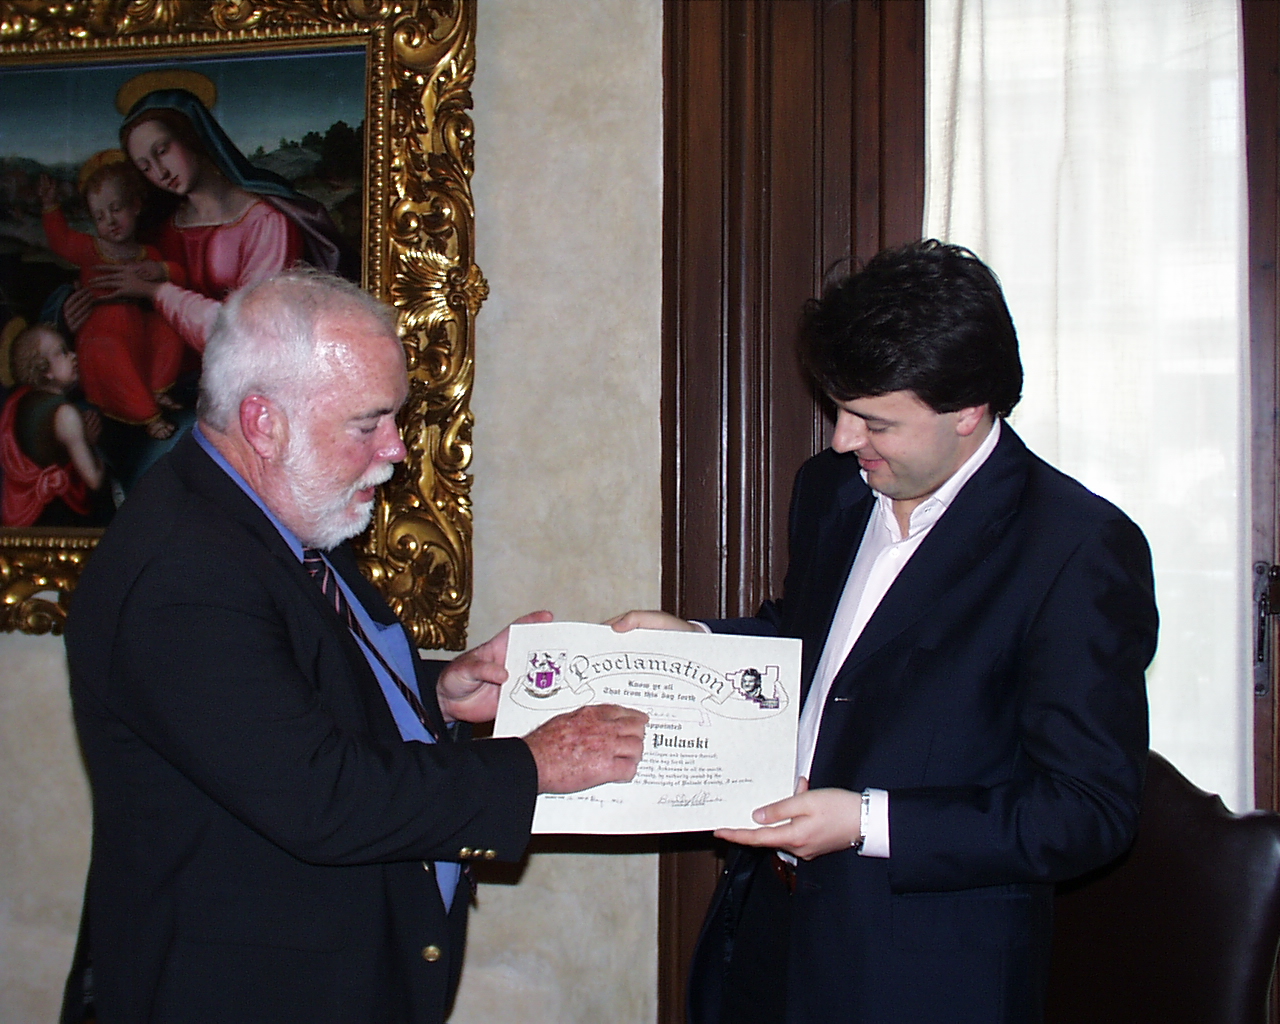 Il presidente della Contea consegna a Renzi il riconoscimento di Count of Pulaski